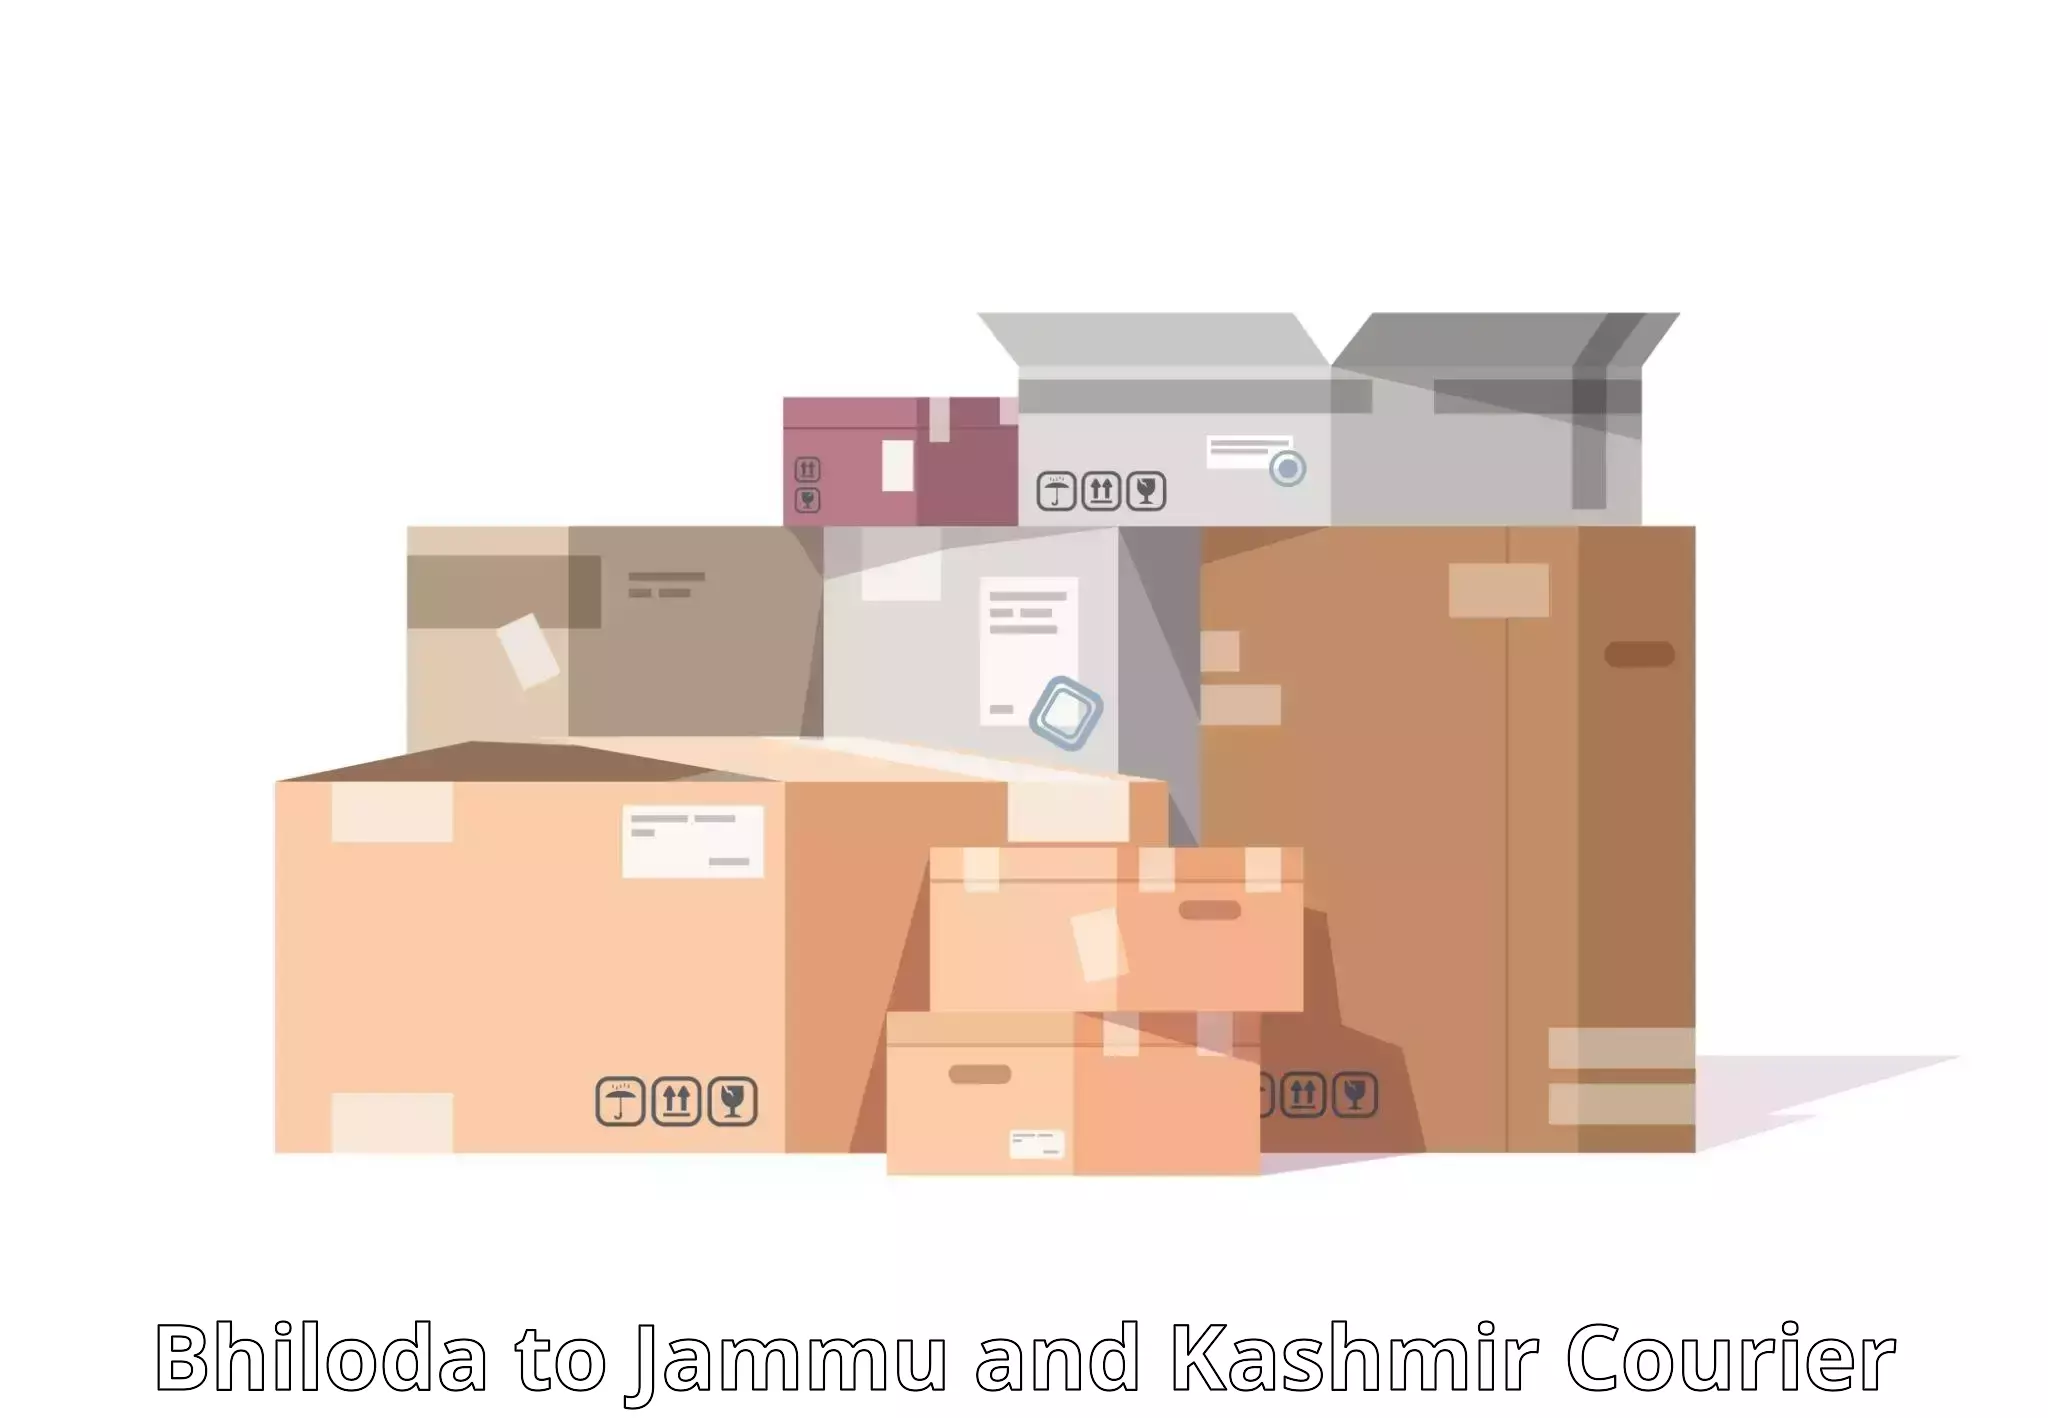 Global parcel delivery Bhiloda to Srinagar Kashmir